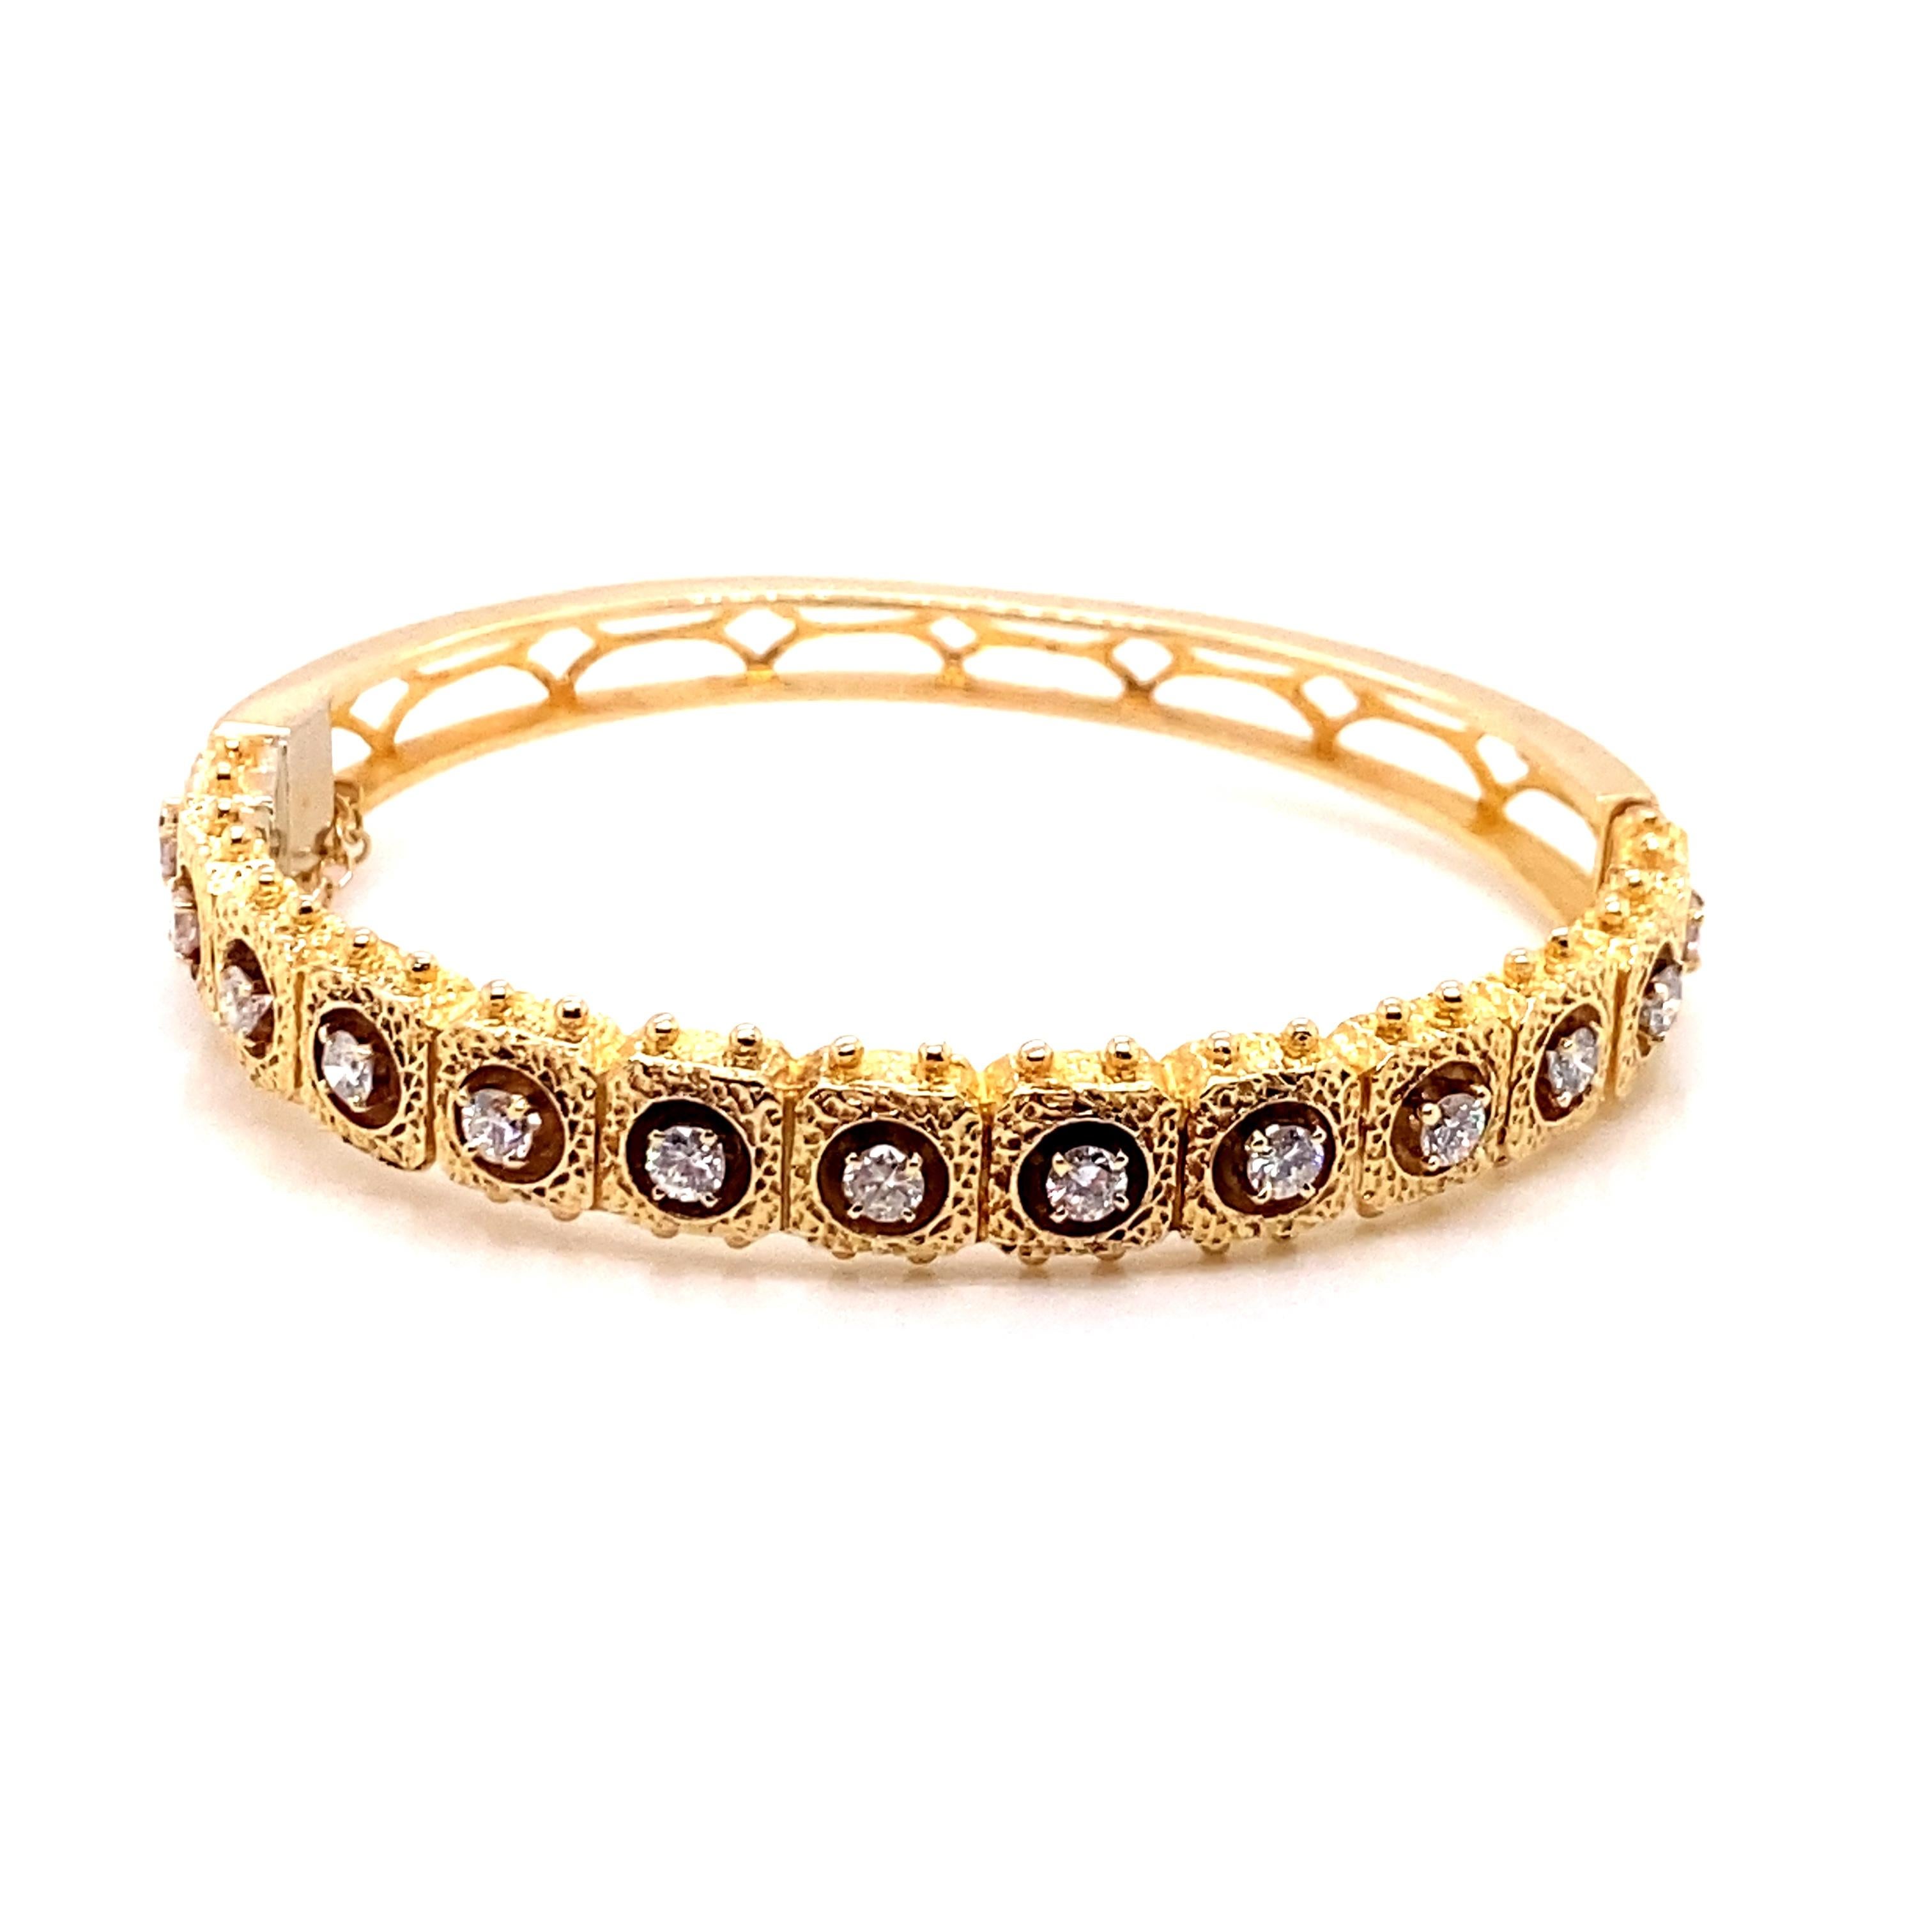 Vintage 1980's 14K Gelbgold Diamant Armreif 1,05ct - Die Armbänder enthält 13 runde Brillanten, die in 4 Zacken Köpfe mit einem ungefähren Gewicht von 1,05ct gesetzt sind. Die Qualität des Diamanten ist G - H Farbe SI Klarheit. Die Breite des